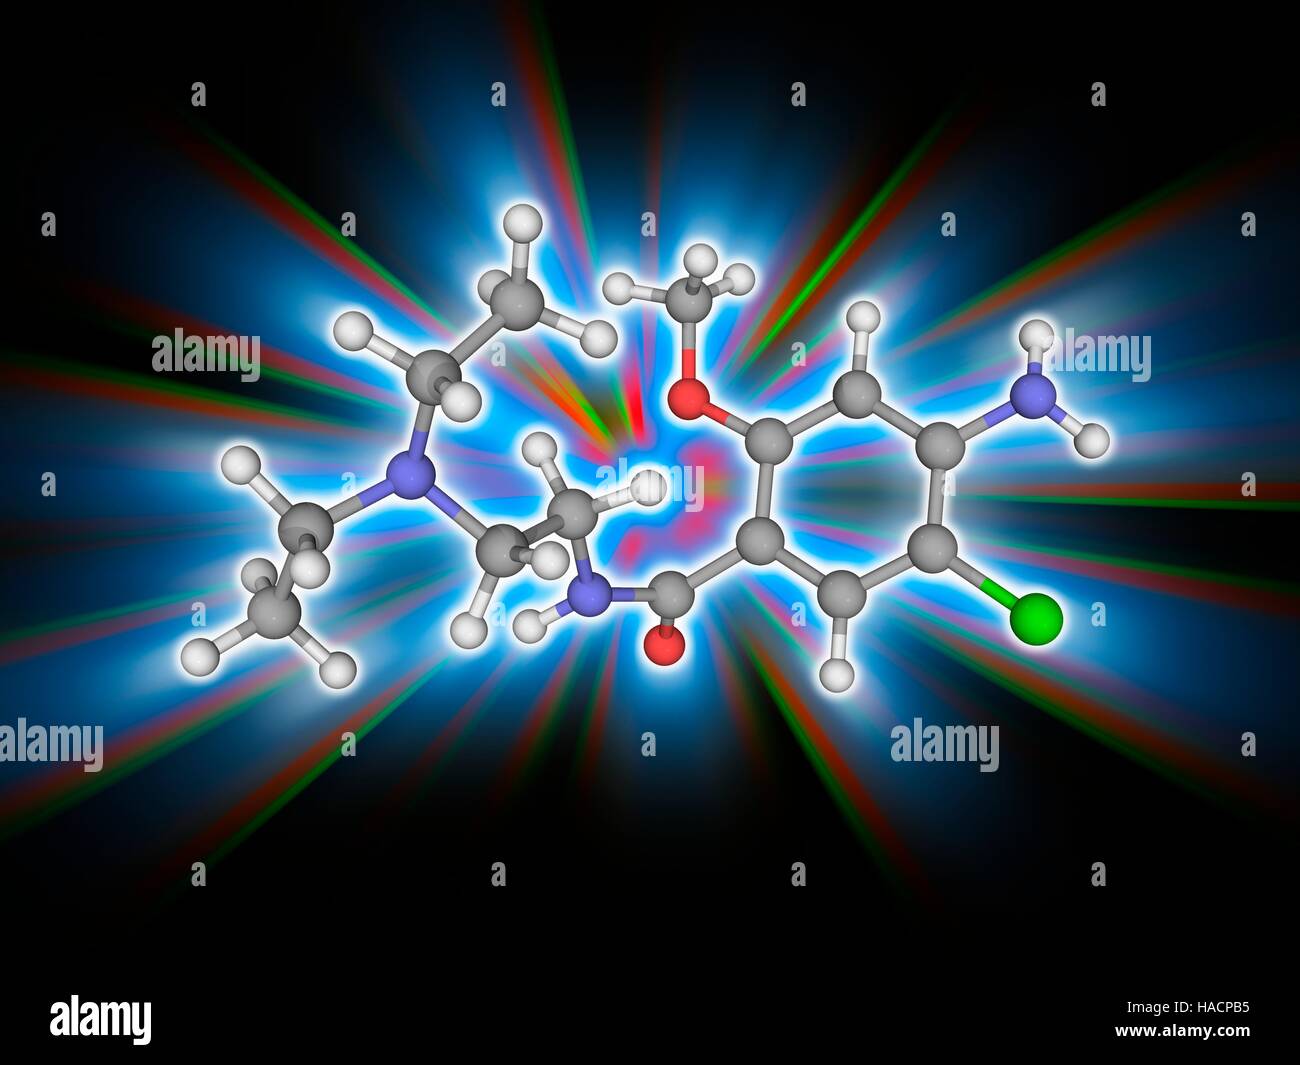 Metoclopramid. Molekulares Modell des Medikament Metoclopramid (C14. H22. Cl.N3.O2), ein Dopamin-Rezeptor-Antagonist zur Behandlung von Übelkeit und Erbrechen. Atome als Kugeln dargestellt werden und sind farblich gekennzeichnet: Kohlenstoff (grau), Wasserstoff (weiß), Stickstoff (blau), Sauerstoff (rot) und Chlor (grün). Abbildung. Stockfoto